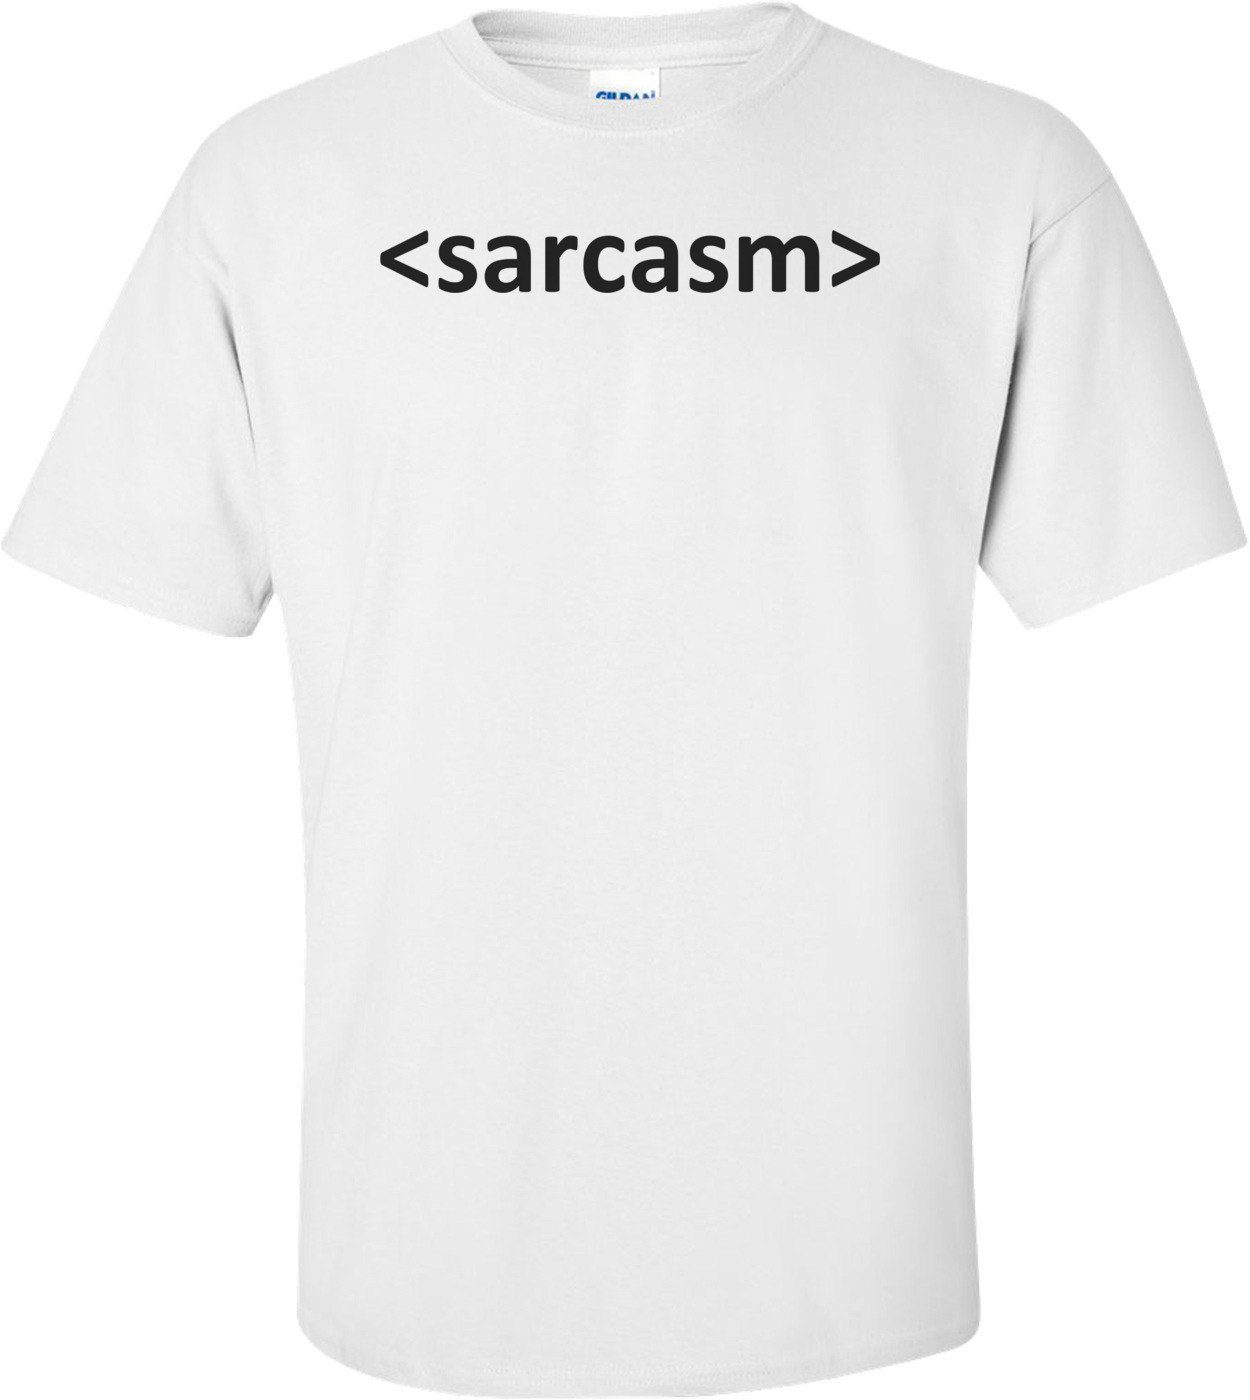 <sarcasm> Shirt